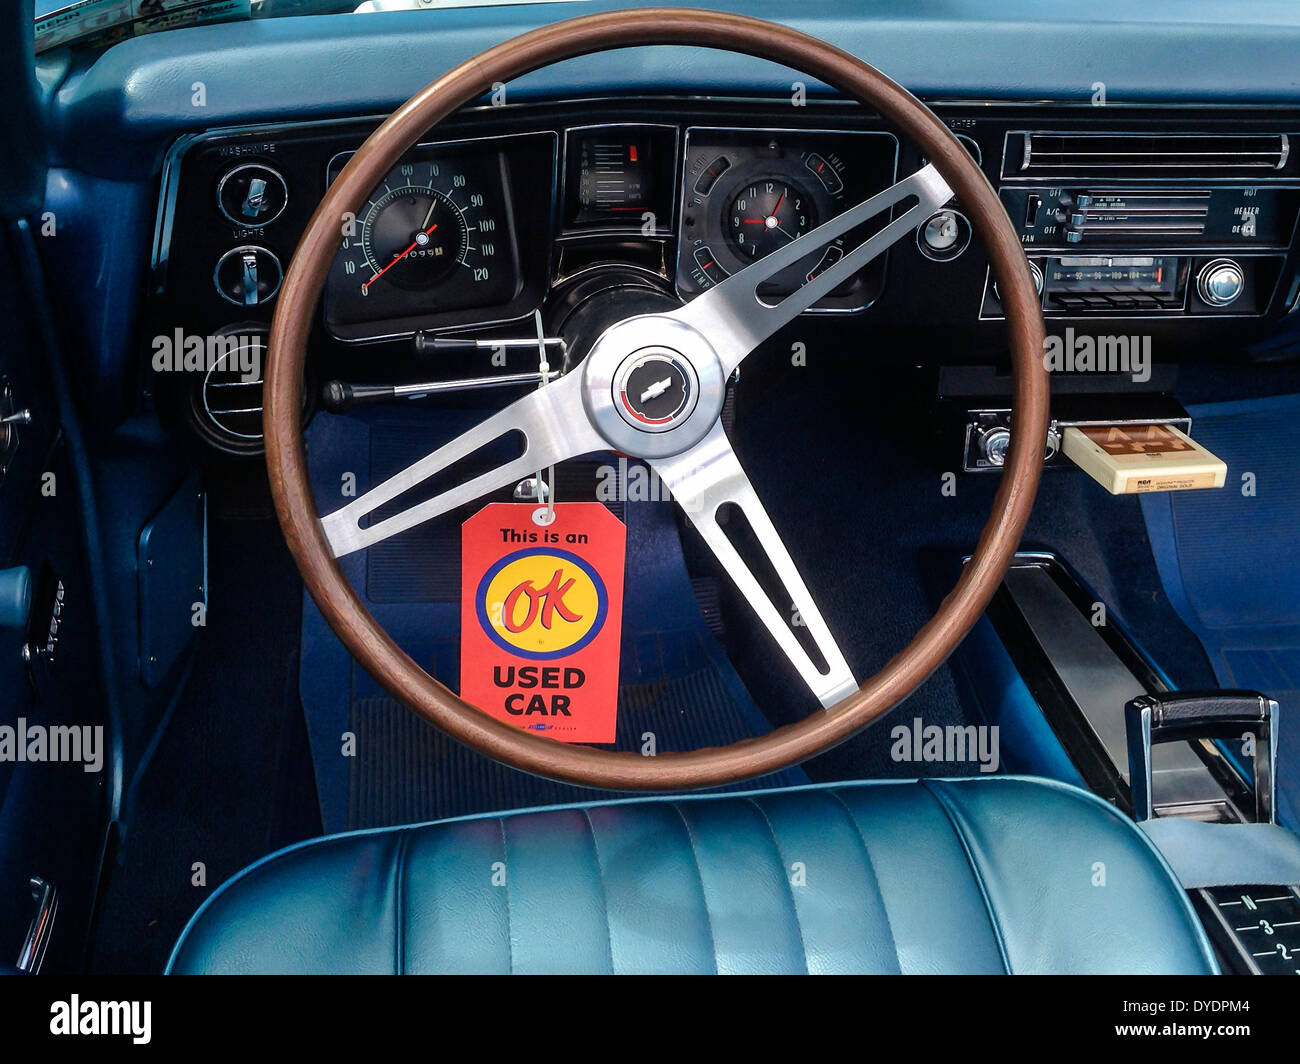 1972 Chevy Camaro Convertible Interior Stock Photo 68530004